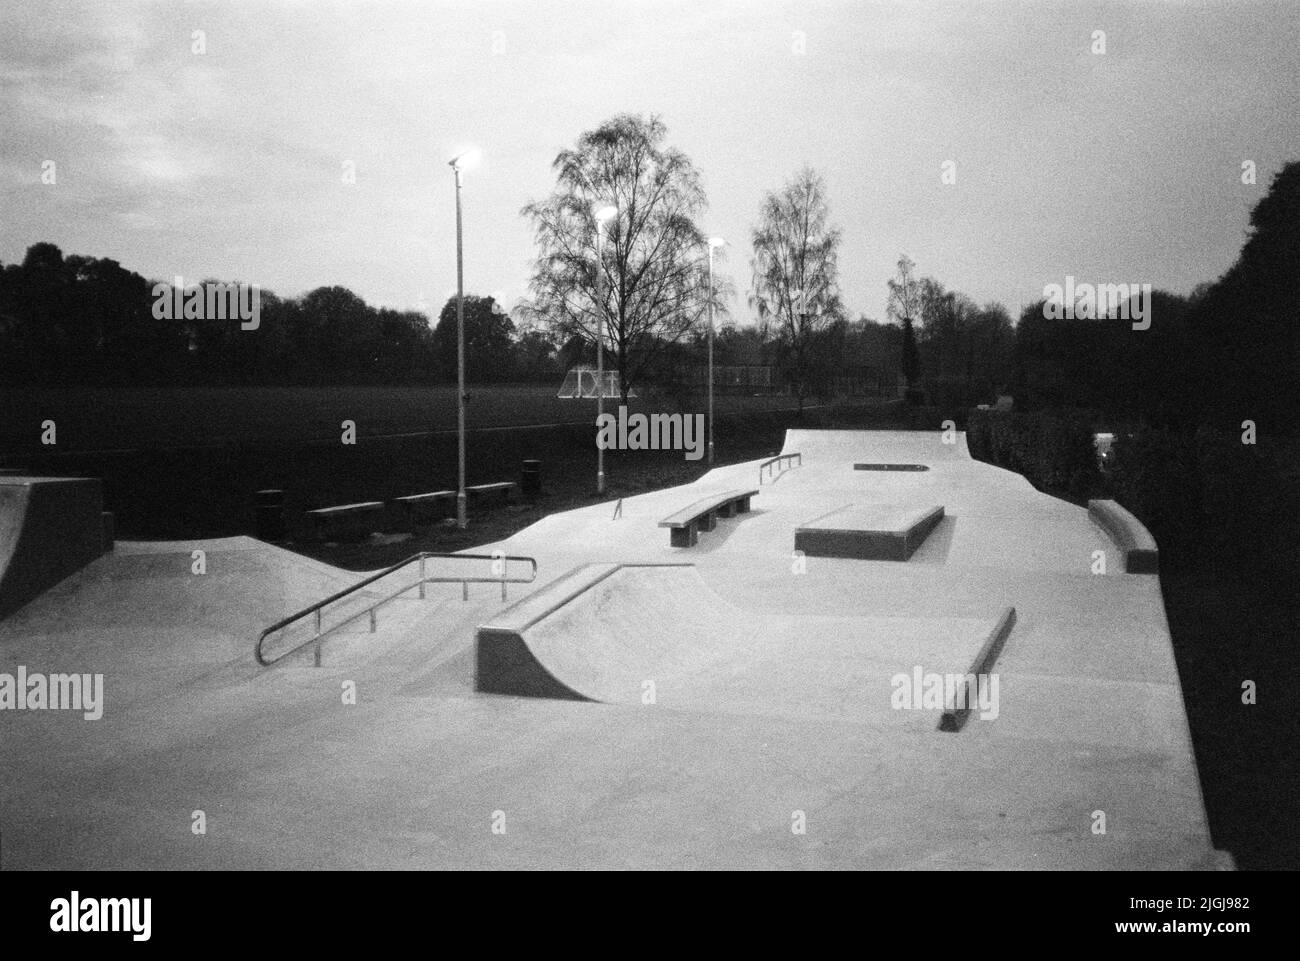 Skateboarding ramps Banque d'images noir et blanc - Alamy